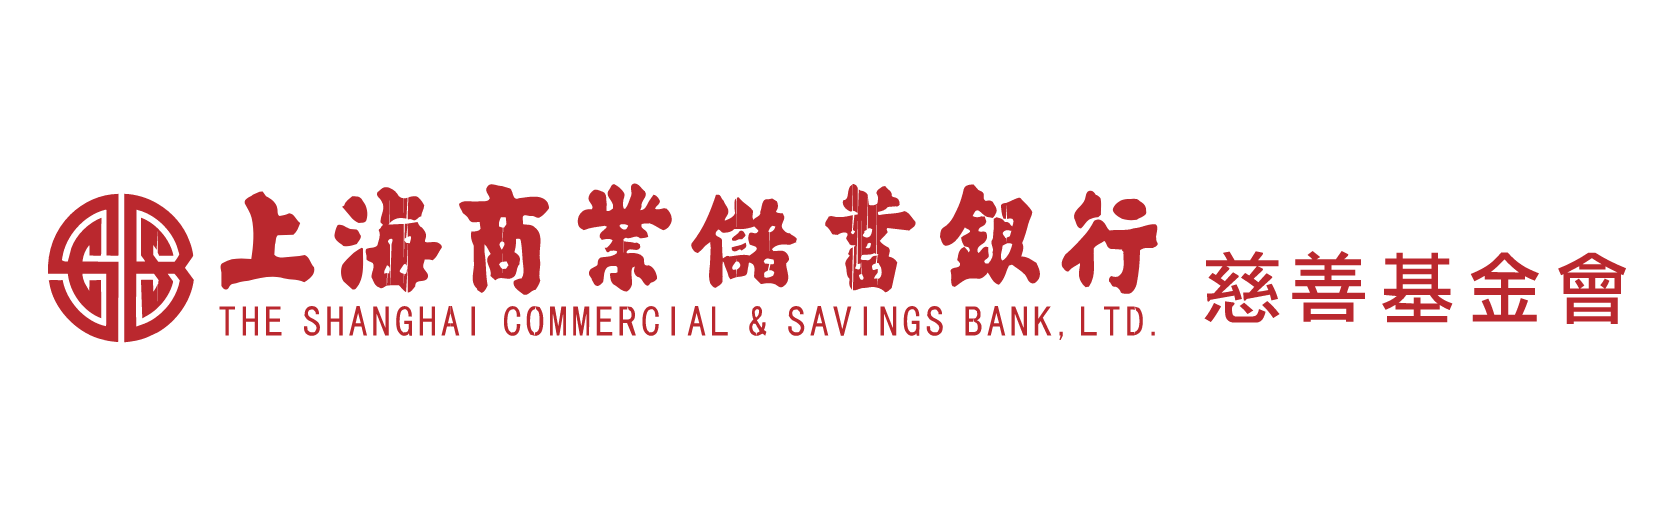 上海商業儲蓄銀行慈善基金會